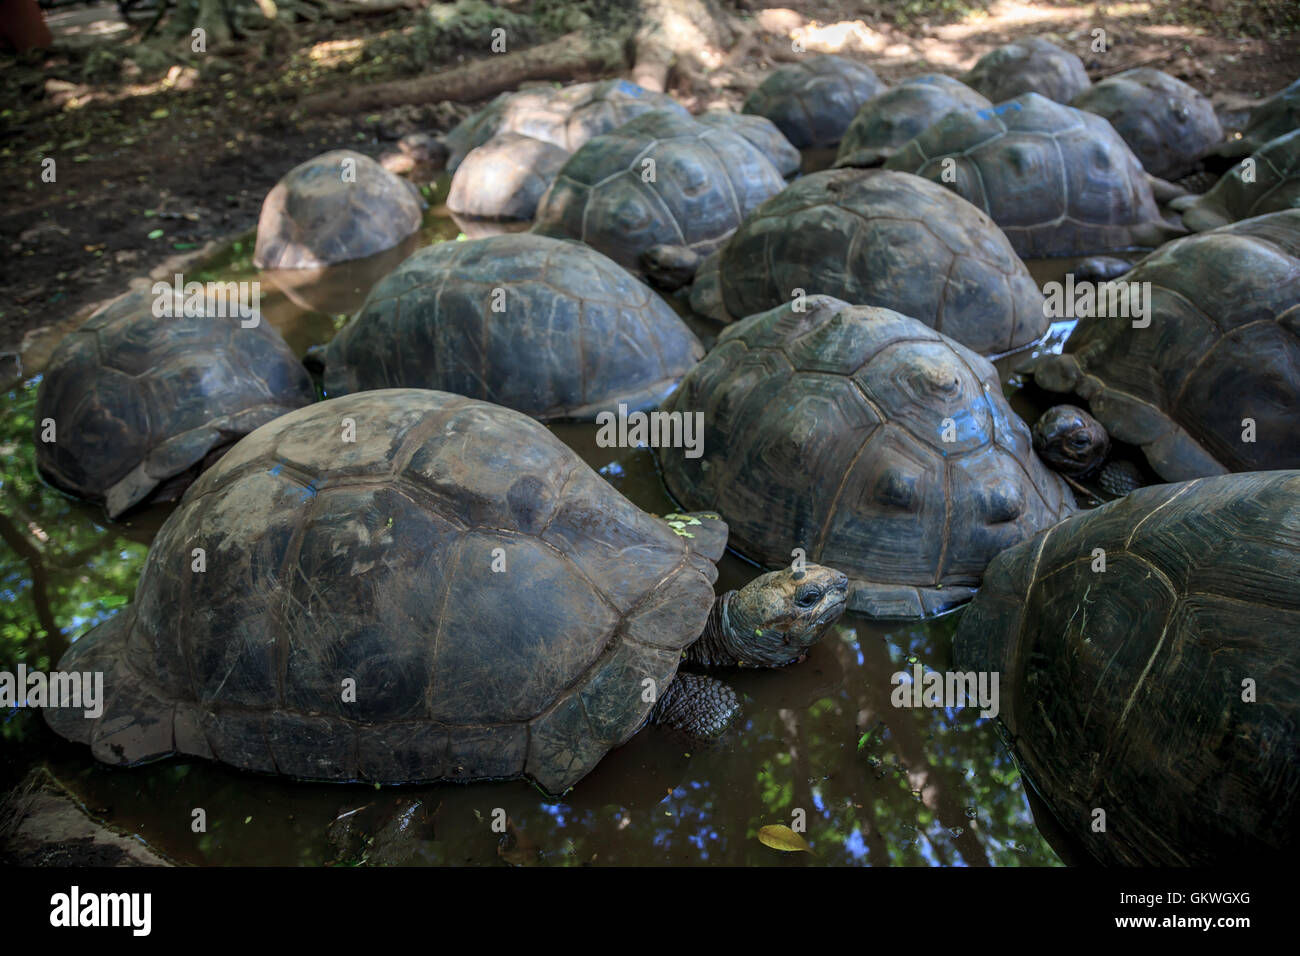 Un groupe de tortues sur l'île de Changuu, Zanzibar Banque D'Images